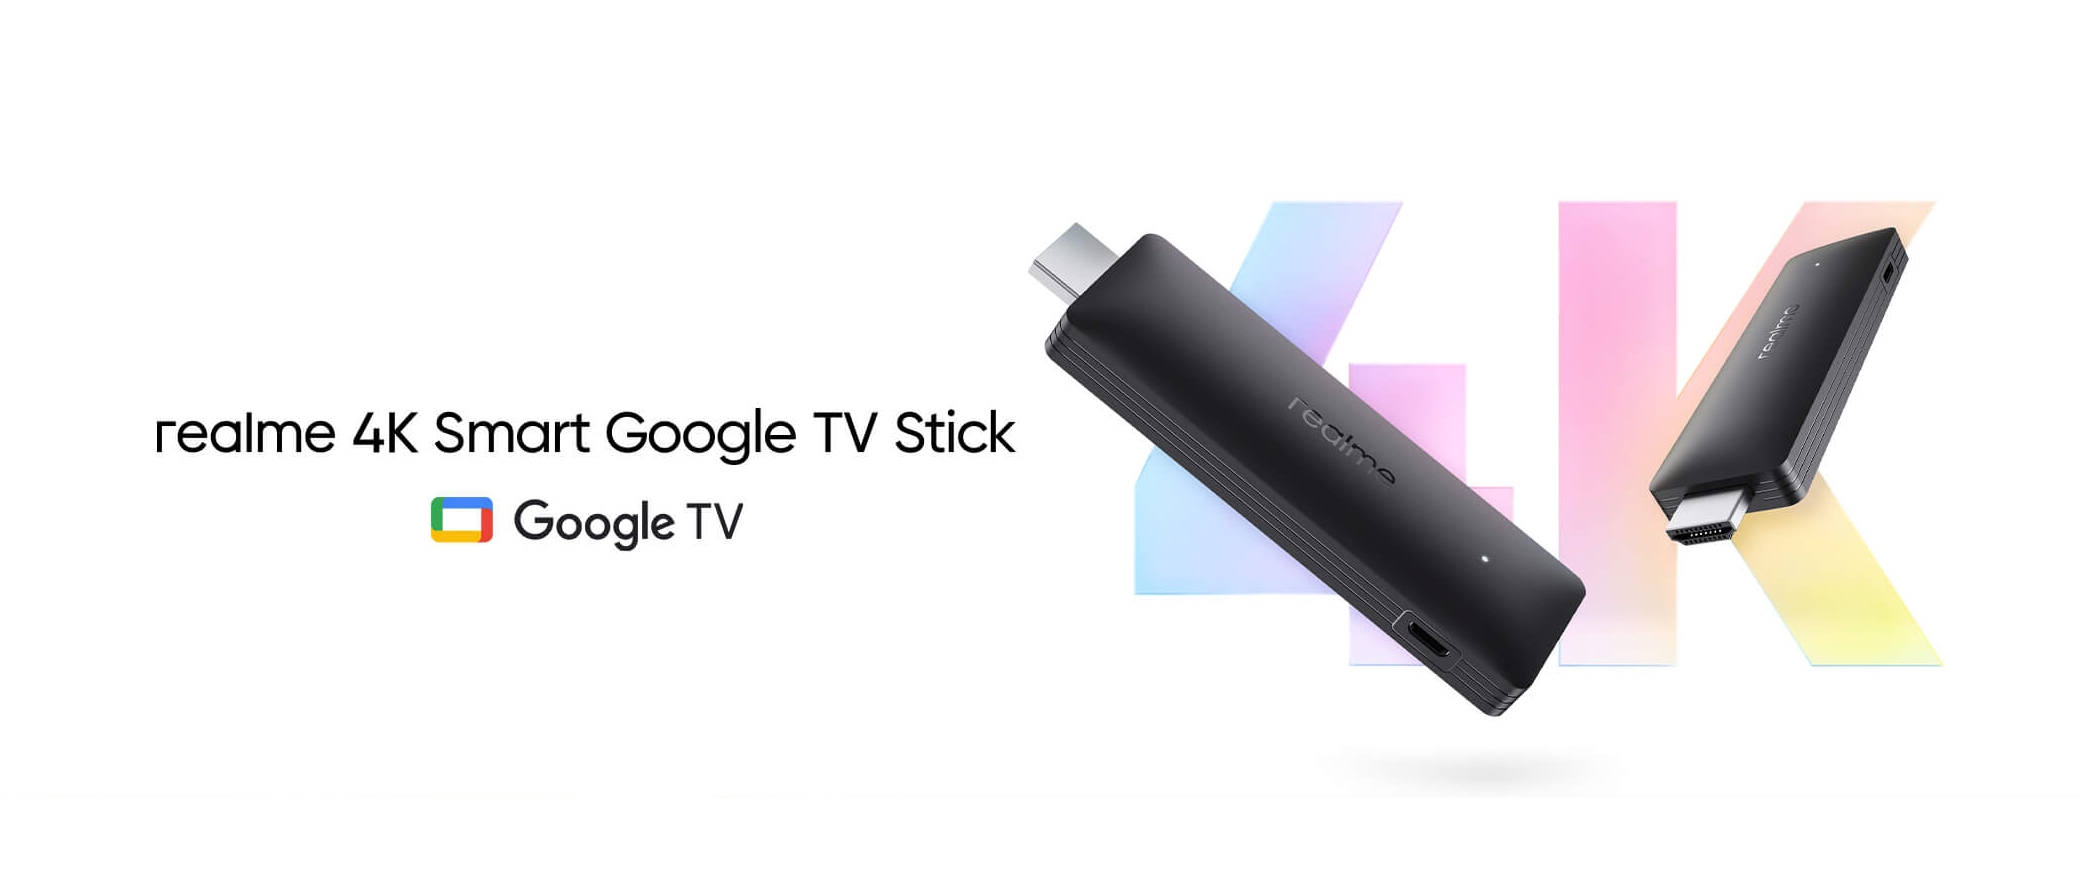 Realme ujawnia szczegóły na temat Realme Smart TV Stick: obsługa 4K, HDMI 2.1 i Google TV na pokładzie